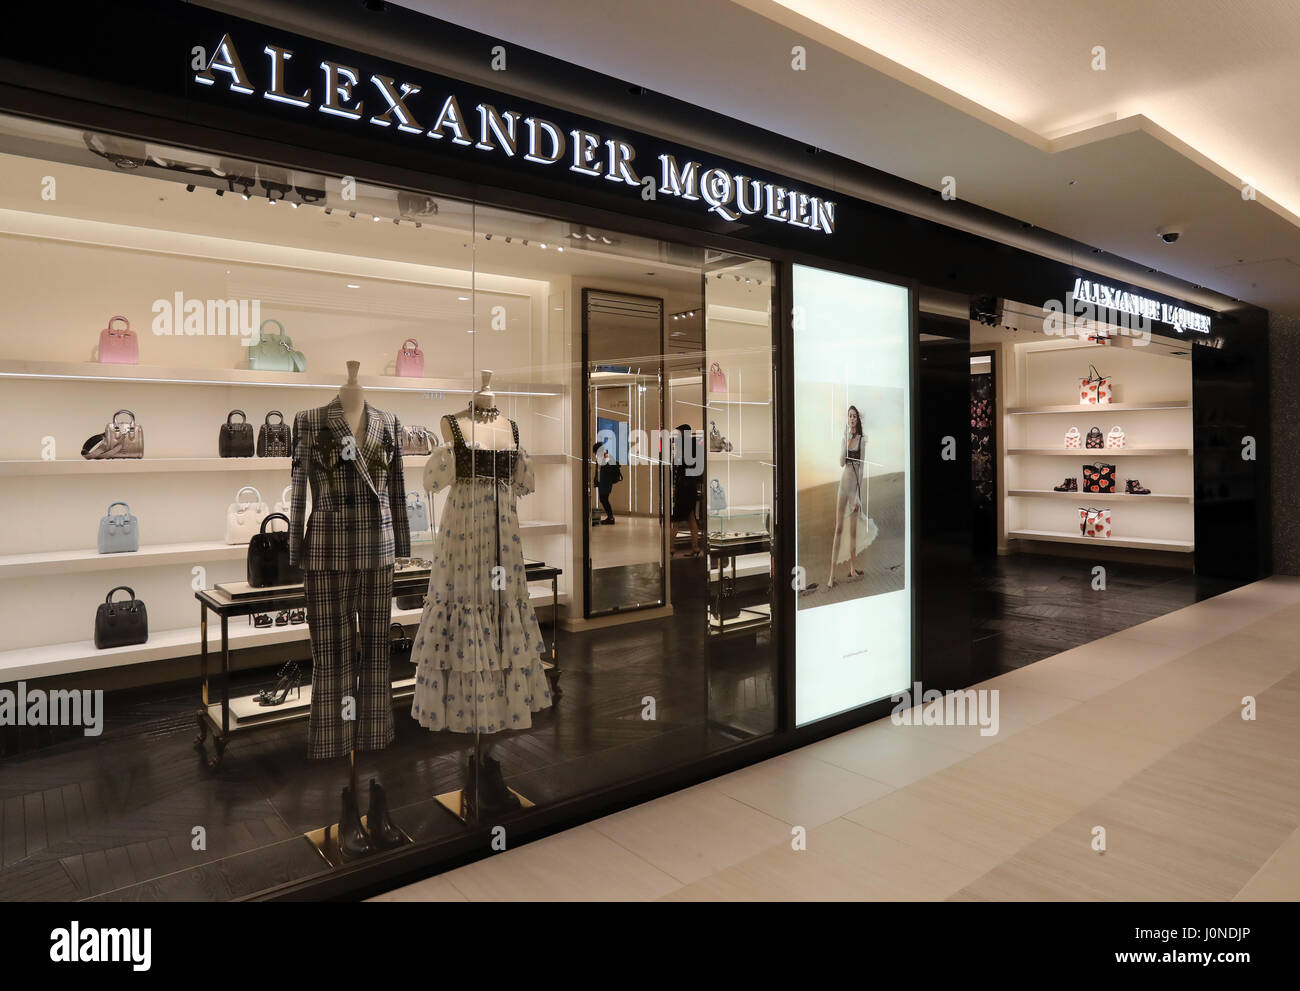 the mall alexander mcqueen